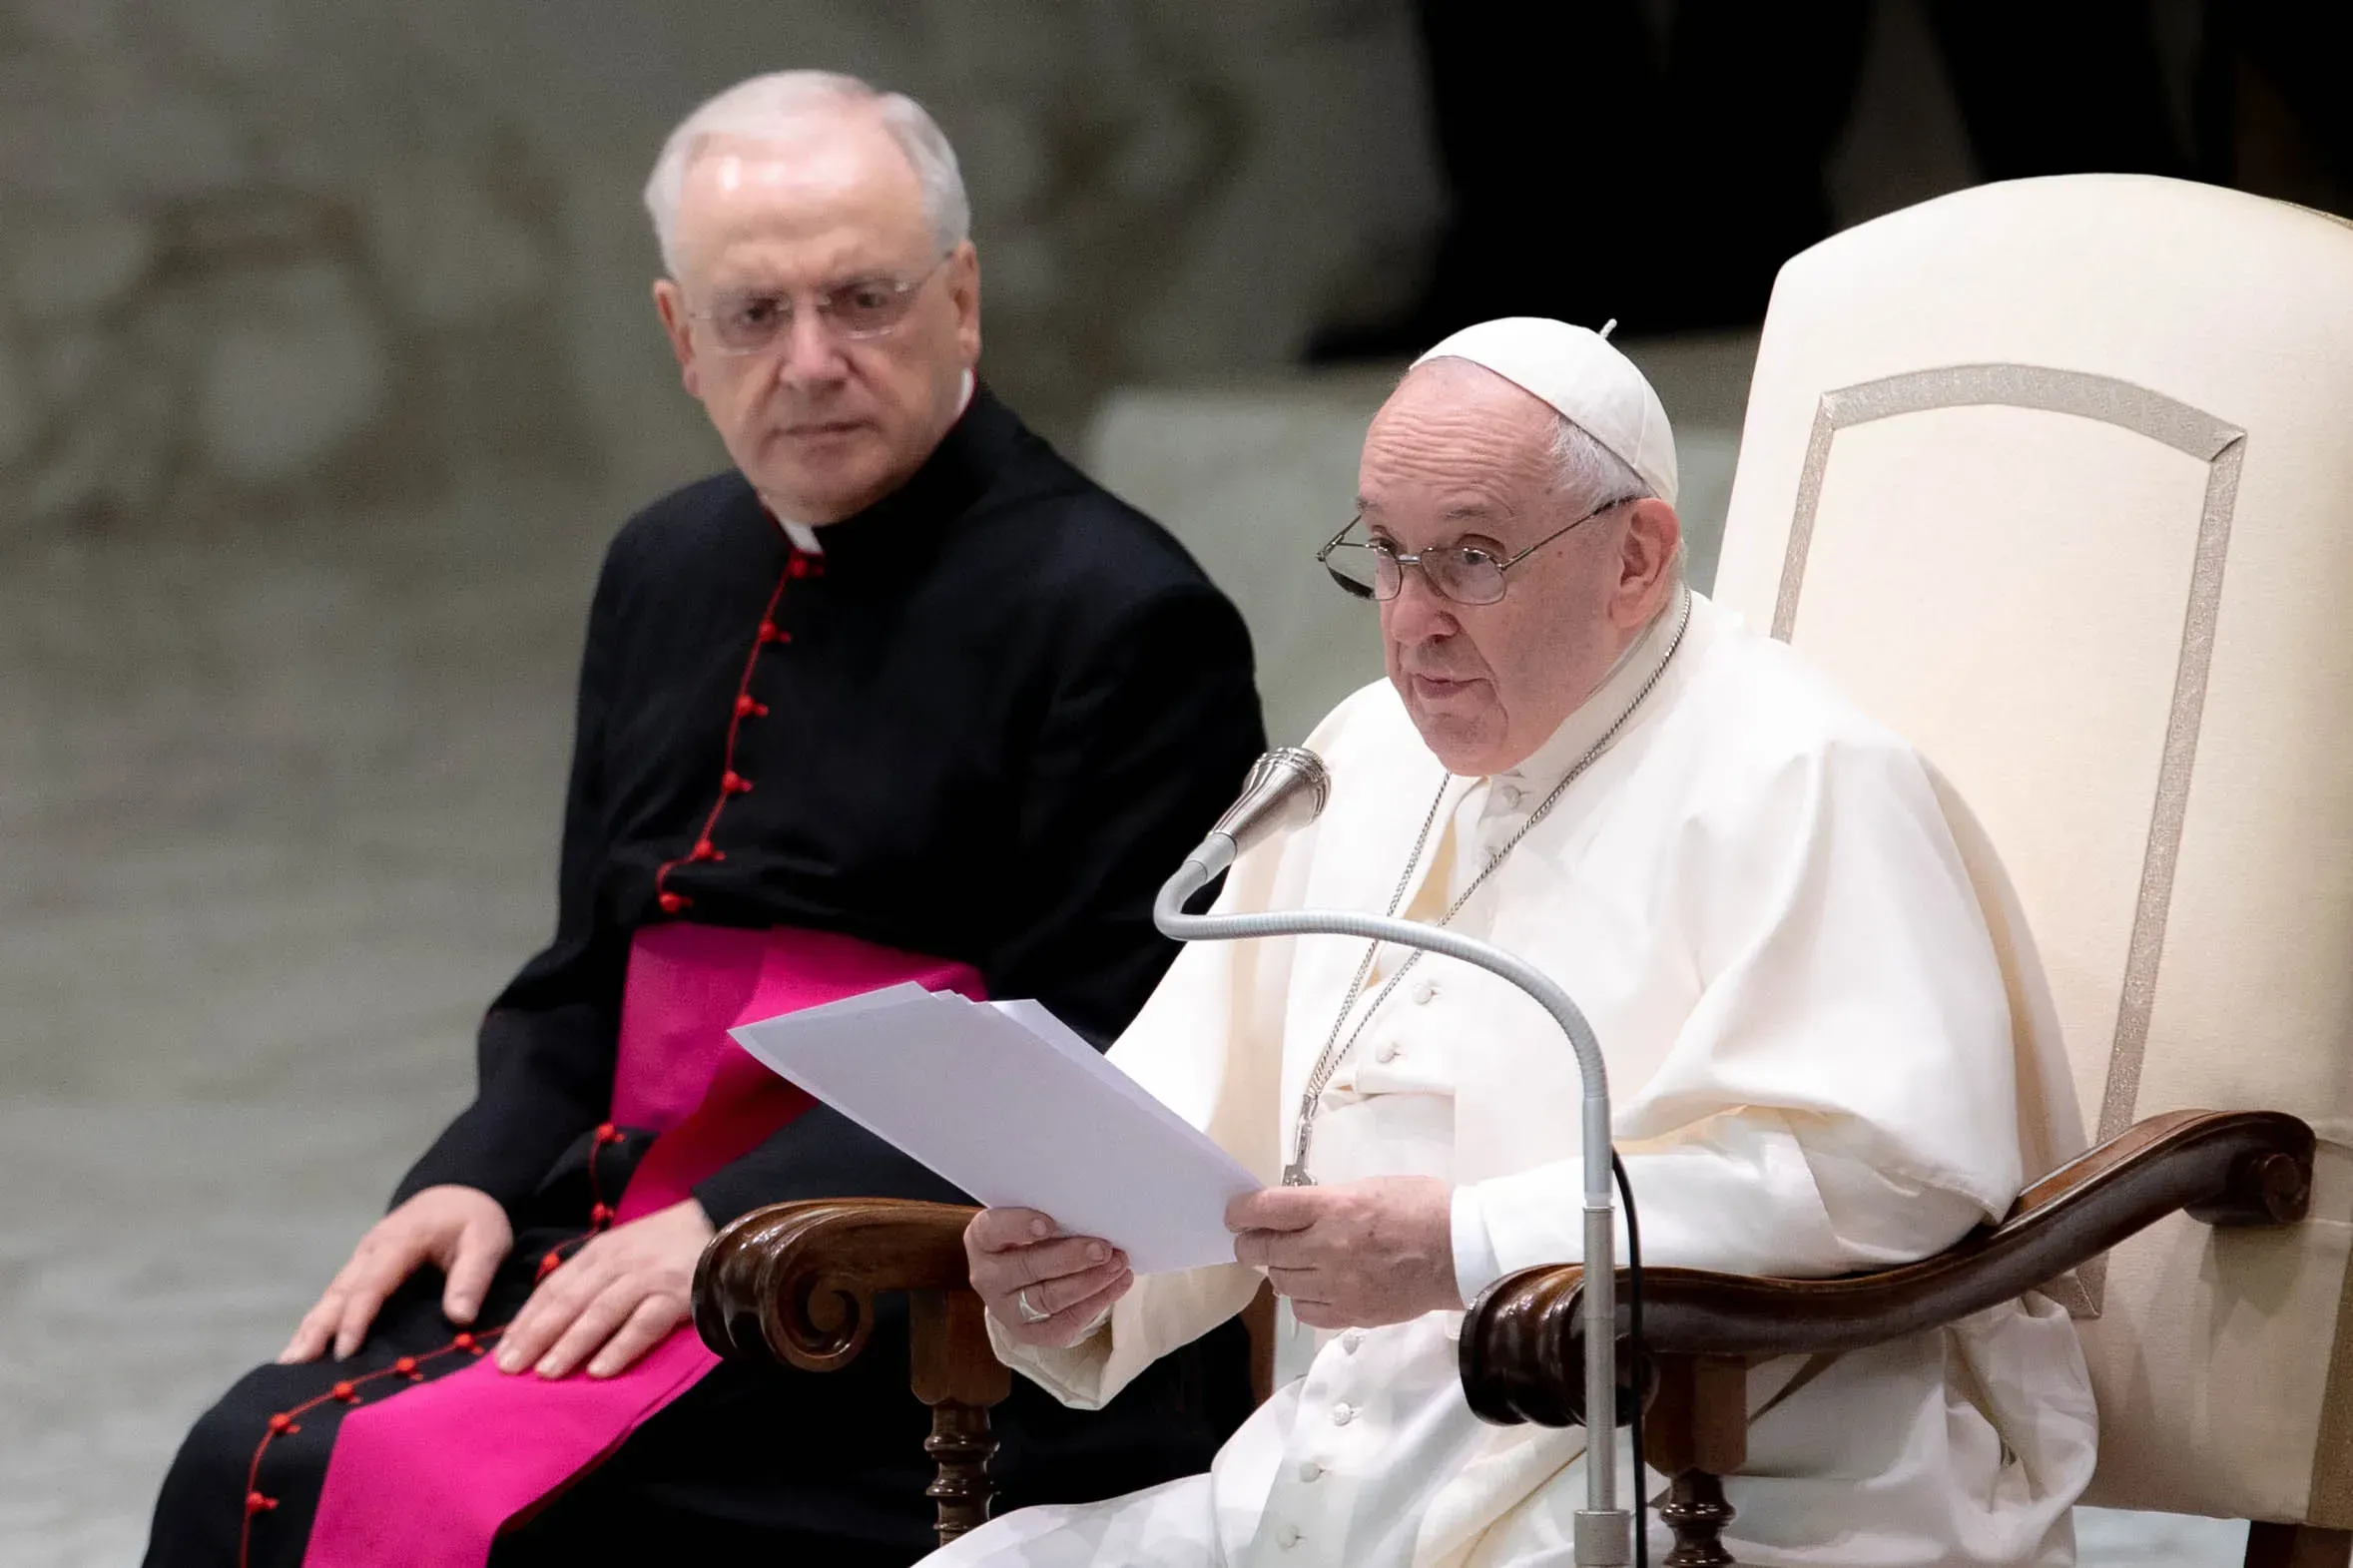 Le pape François prononce son discours d'audience générale dans la salle Paul VI du Vatican, le 27 octobre 2021. Daniel Ibanez/CNA / 